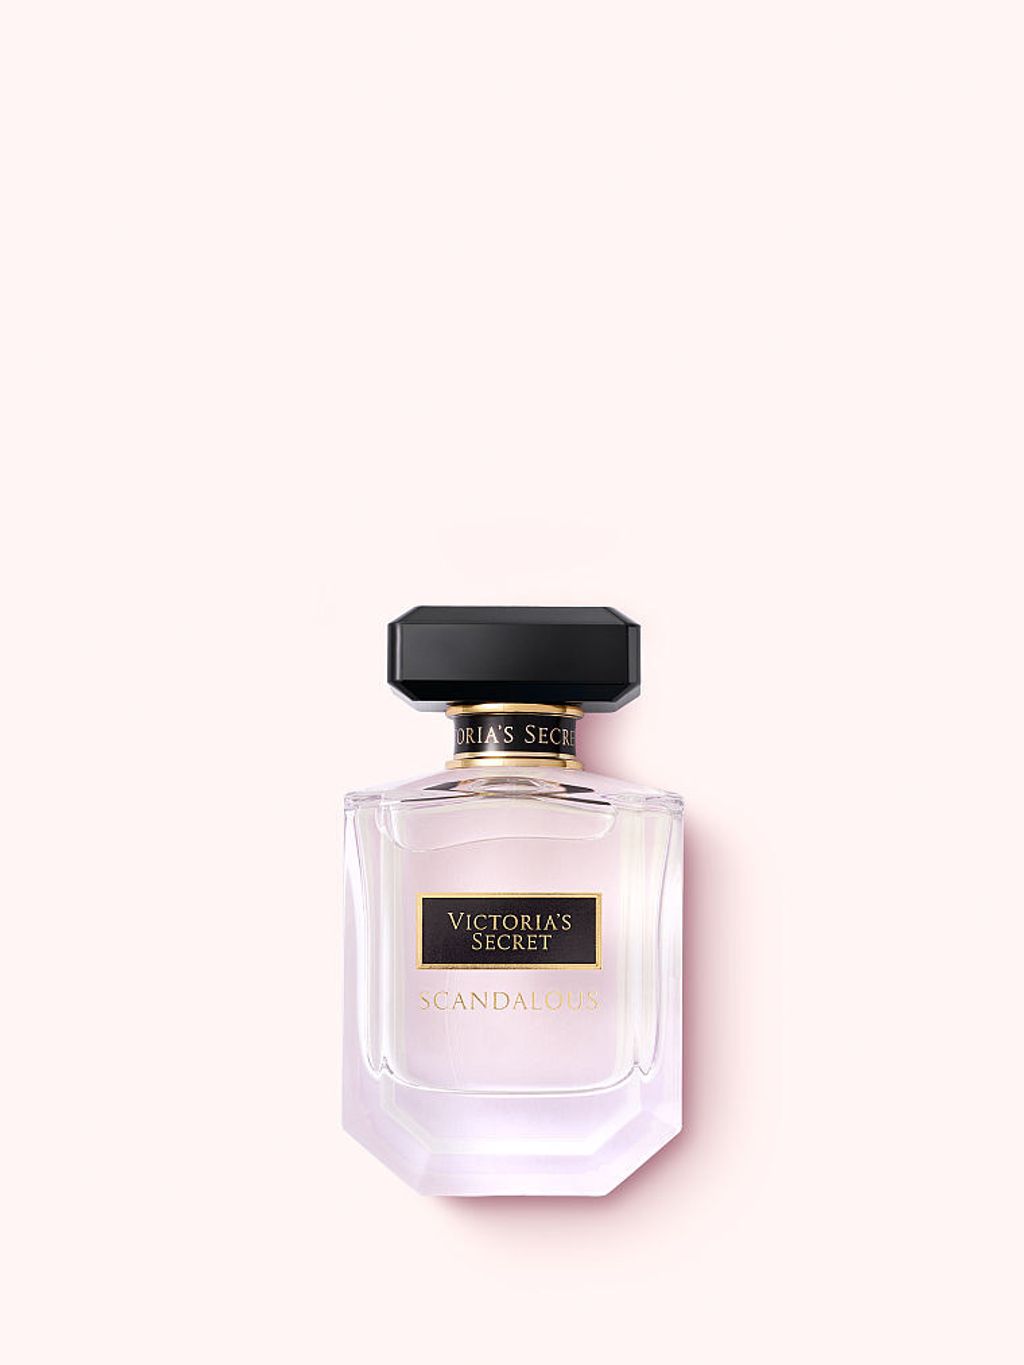 vs Eau de Parfum $12.4 w tax scandolous